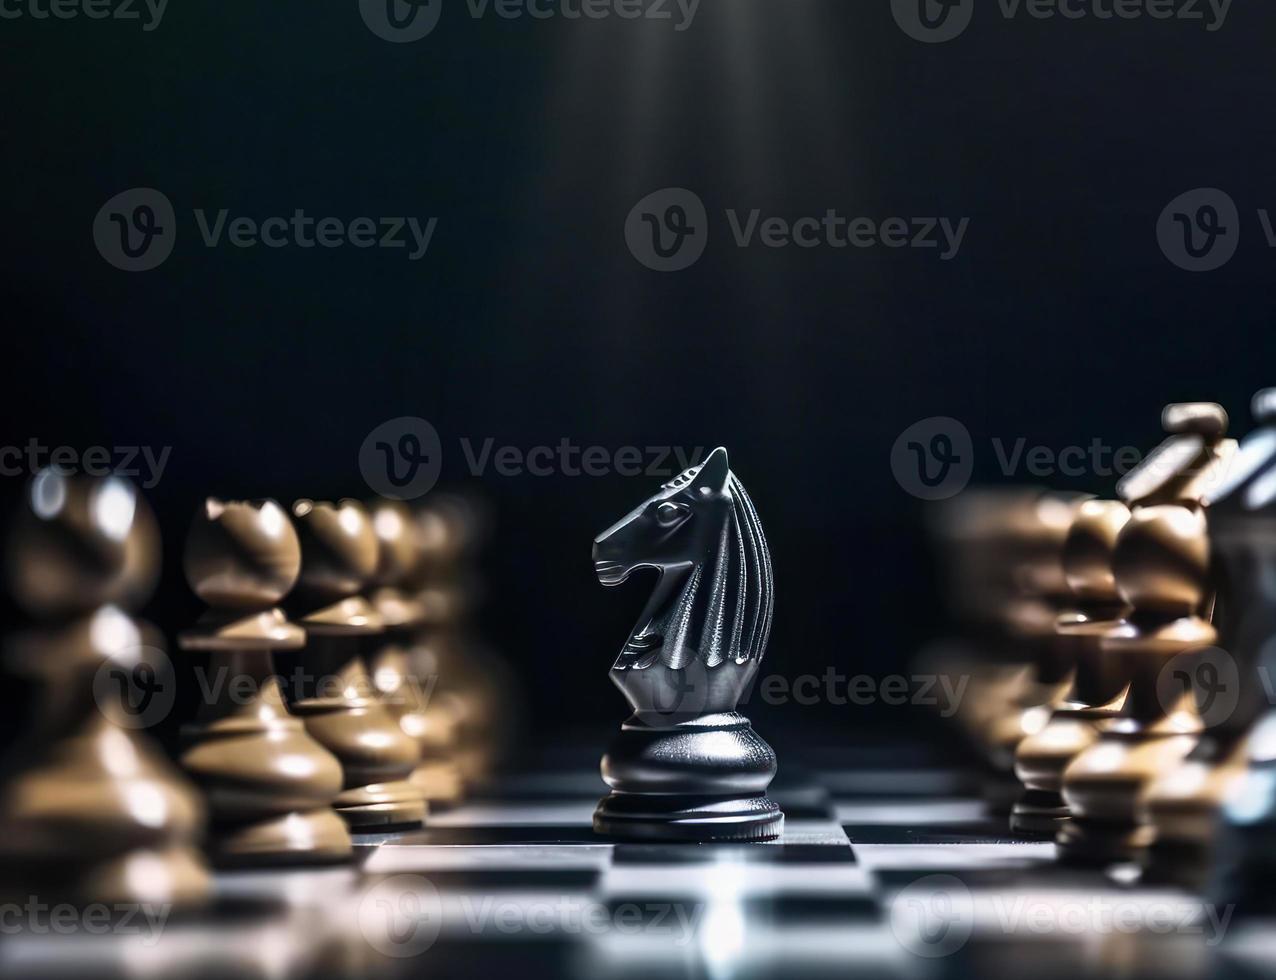 Immagine di scacchi gioco. attività commerciale, concorrenza, strategia, comando e successo concetto foto